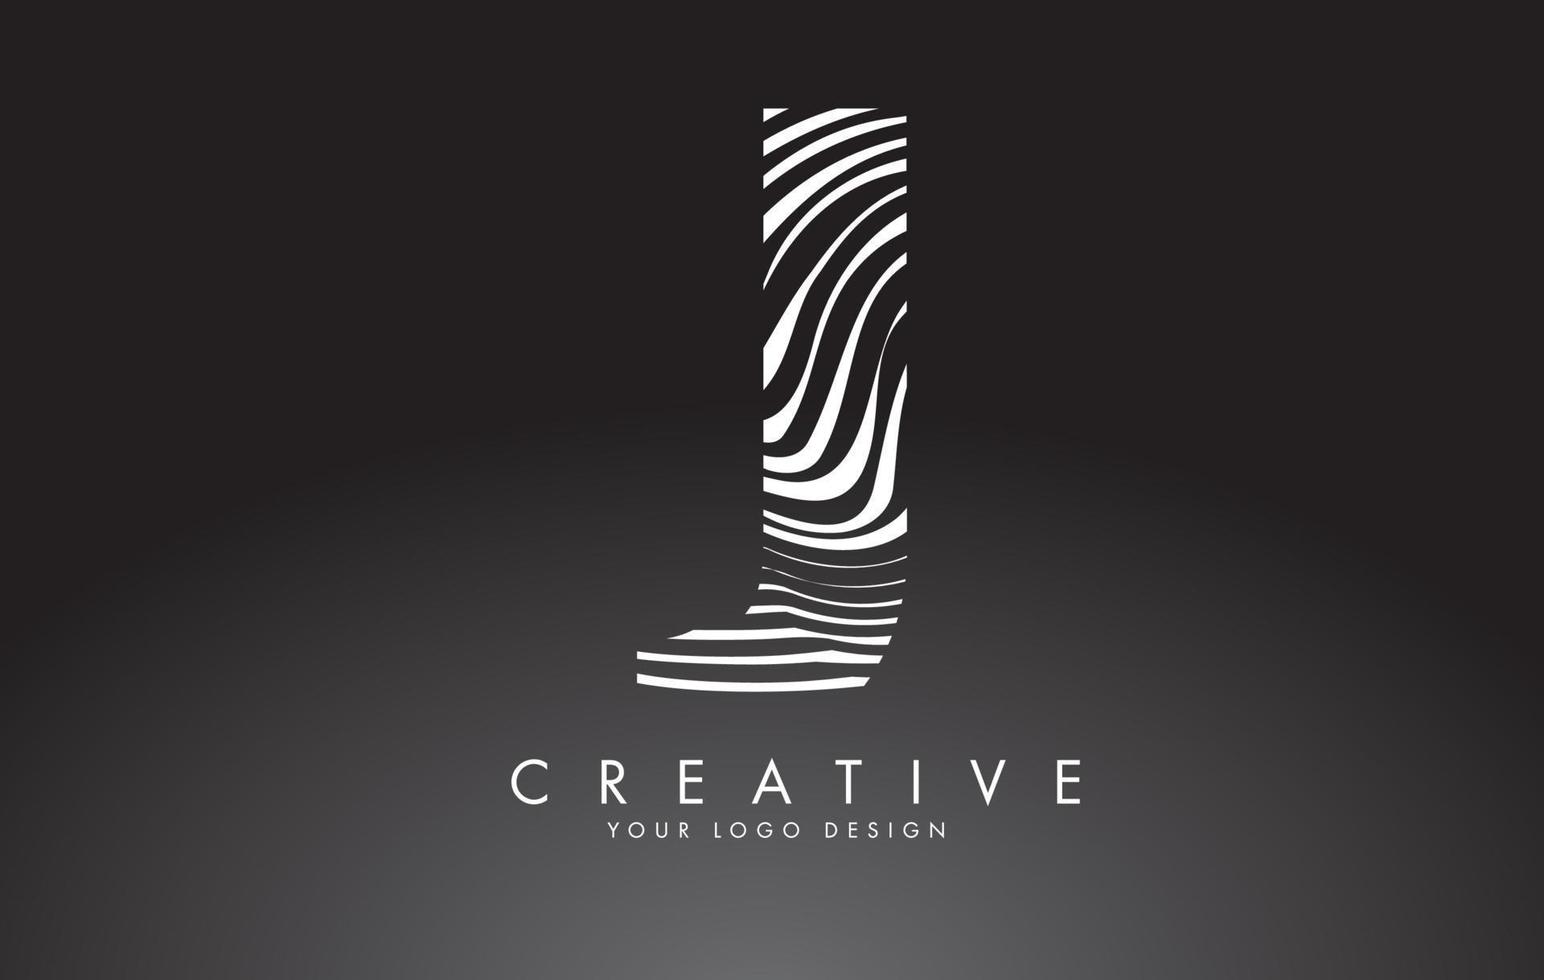 j brief logo-ontwerp met vingerafdruk, zwart-wit hout of zebra textuur op een zwarte achtergrond. vector